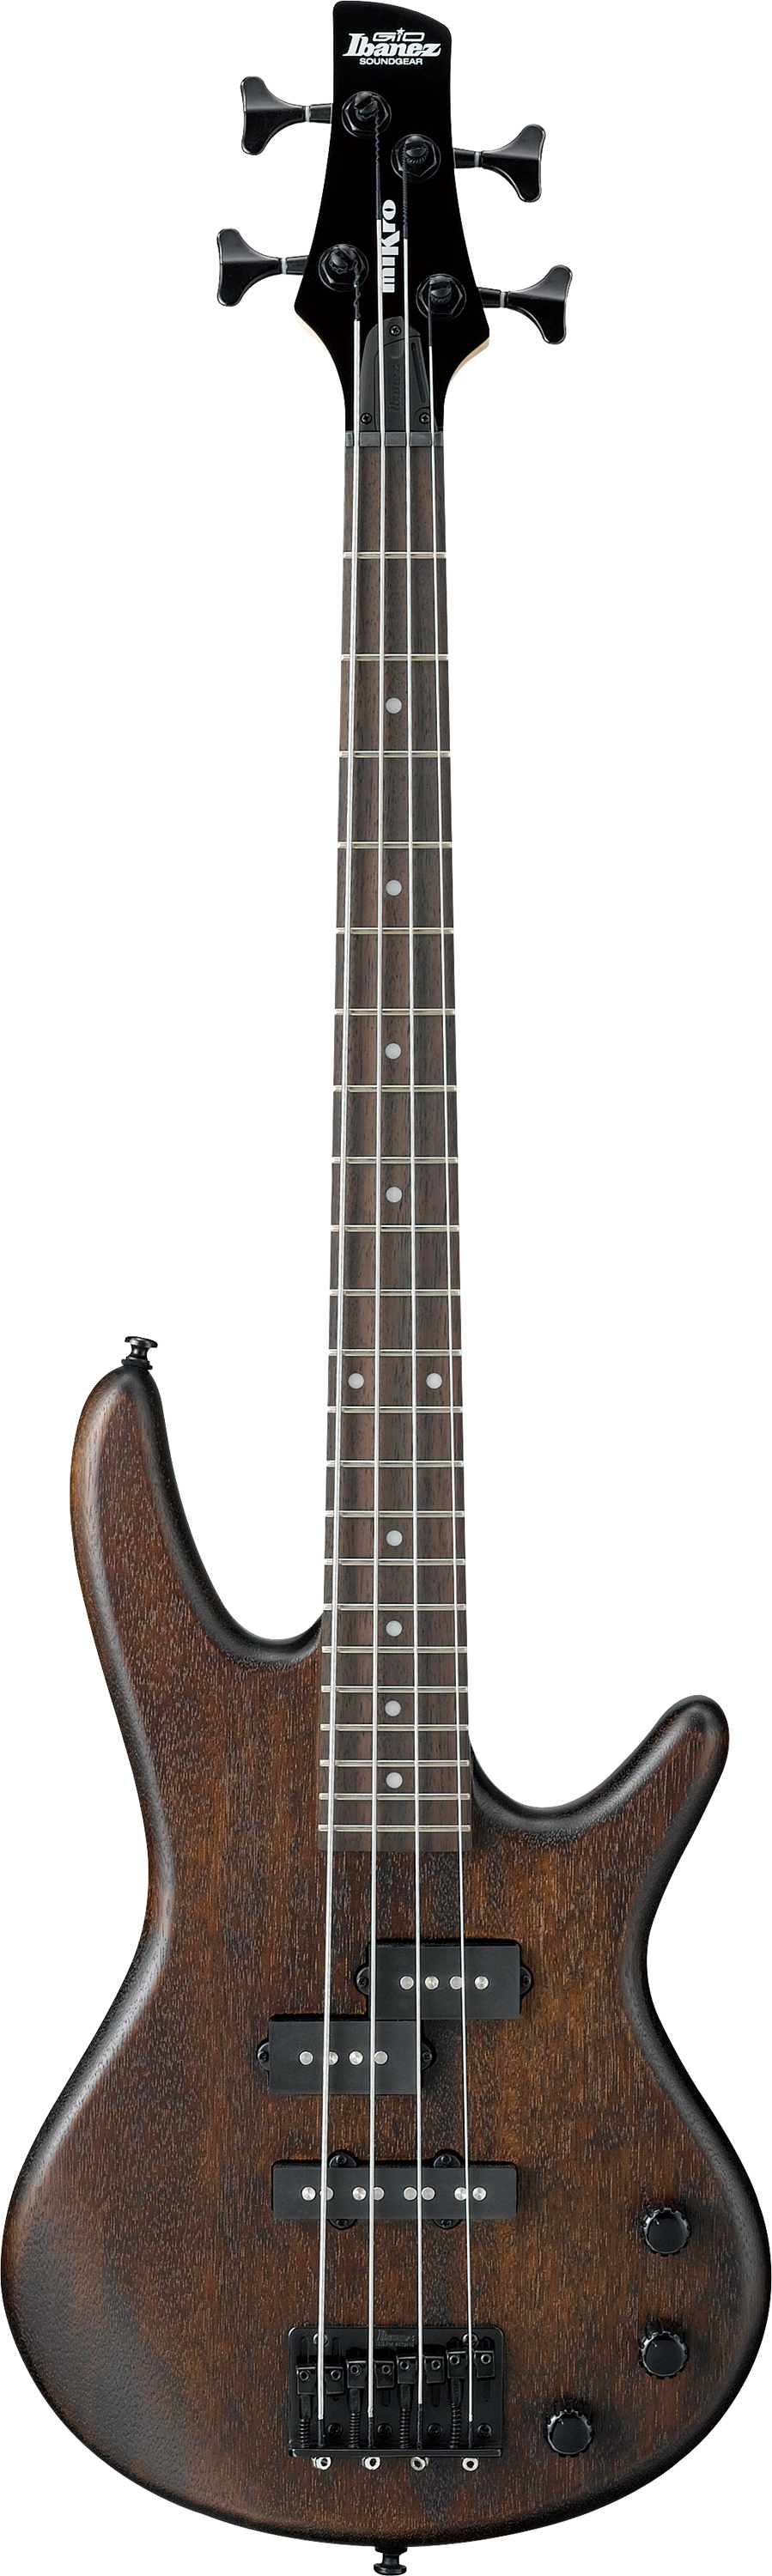 GSRM20B-WNF E-Bass Mikro 4-String Walnut flat